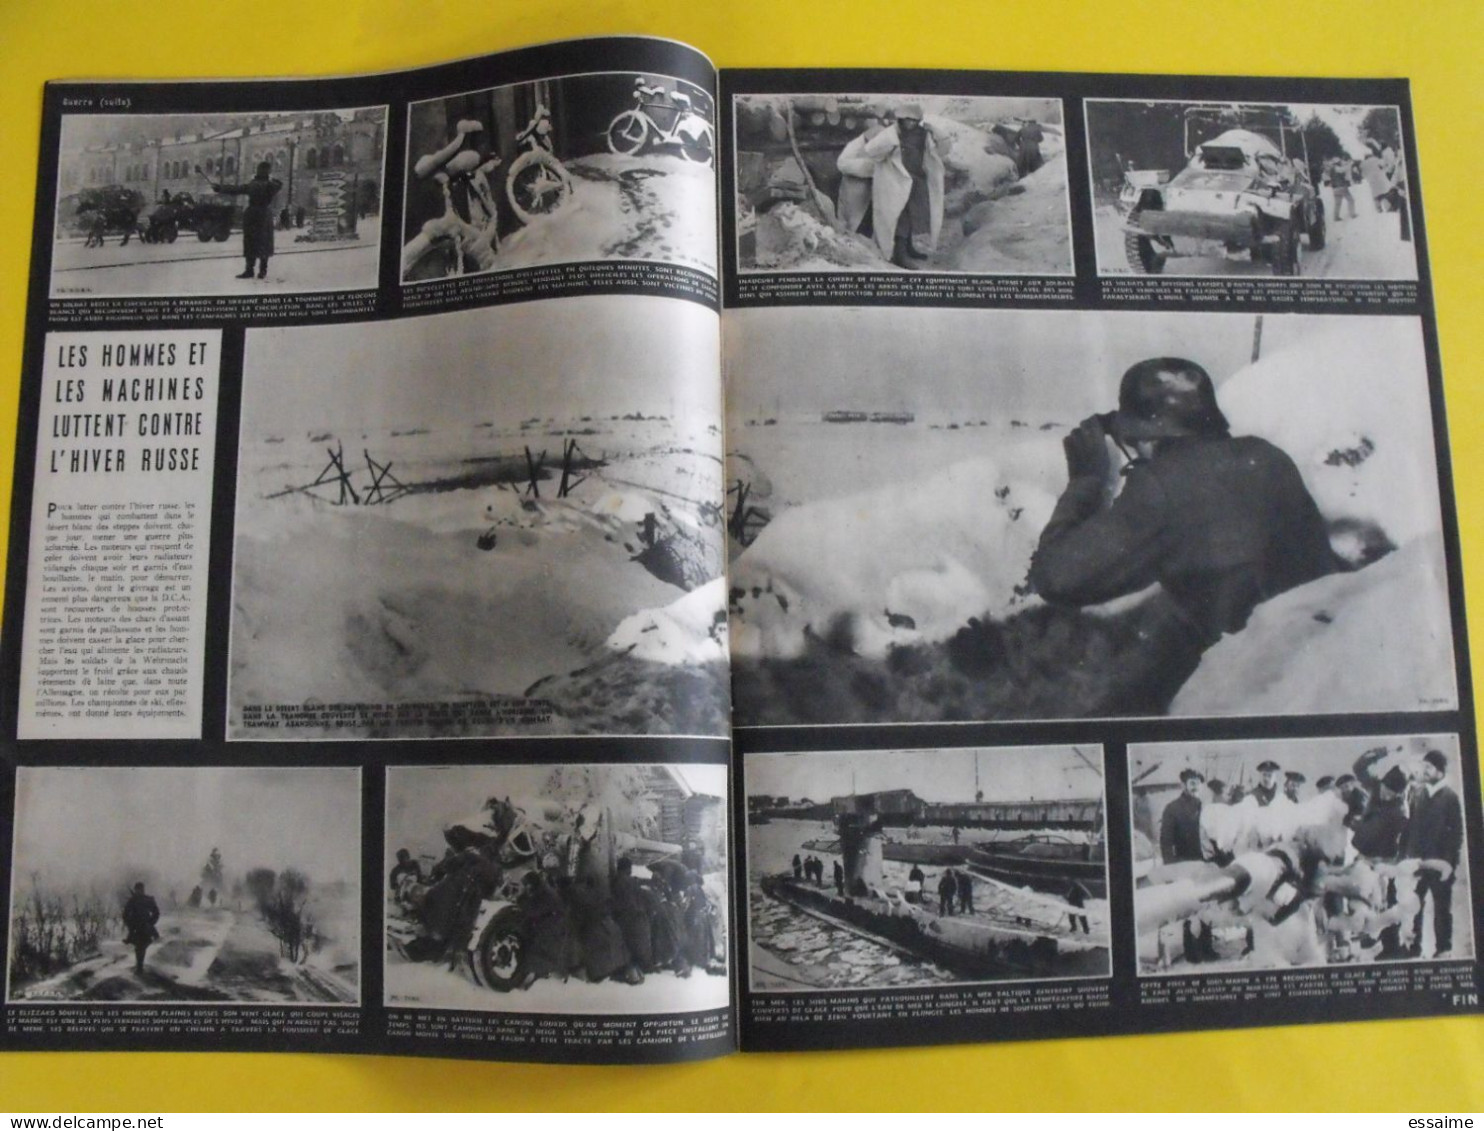 6 revues La semaine de 1942. actualités guerre photos collaboration pacifique japon singapour malaisie australie togo